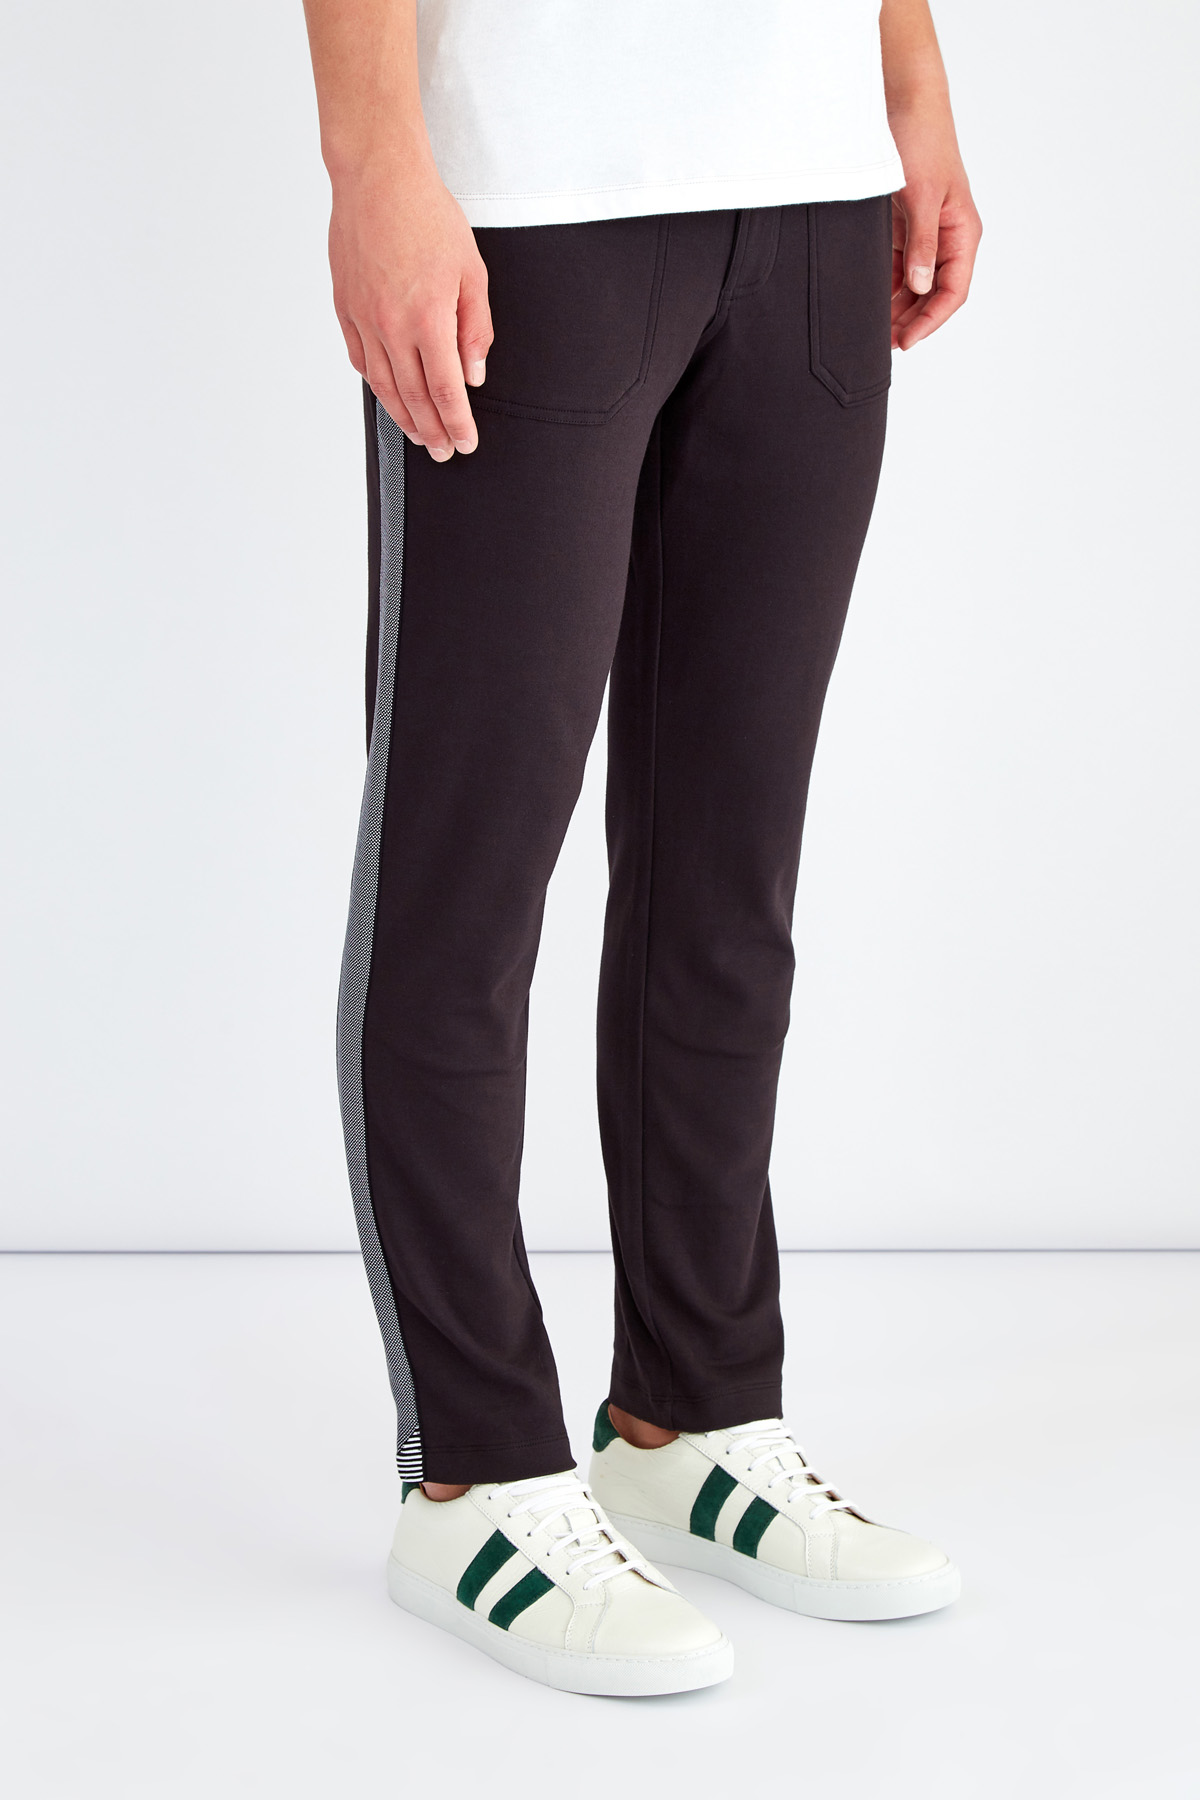 Спортивные брюки из хлопка с лампасами и накладными карманами MICHAEL KORS, цвет черный, размер L;XL;2XL - фото 3